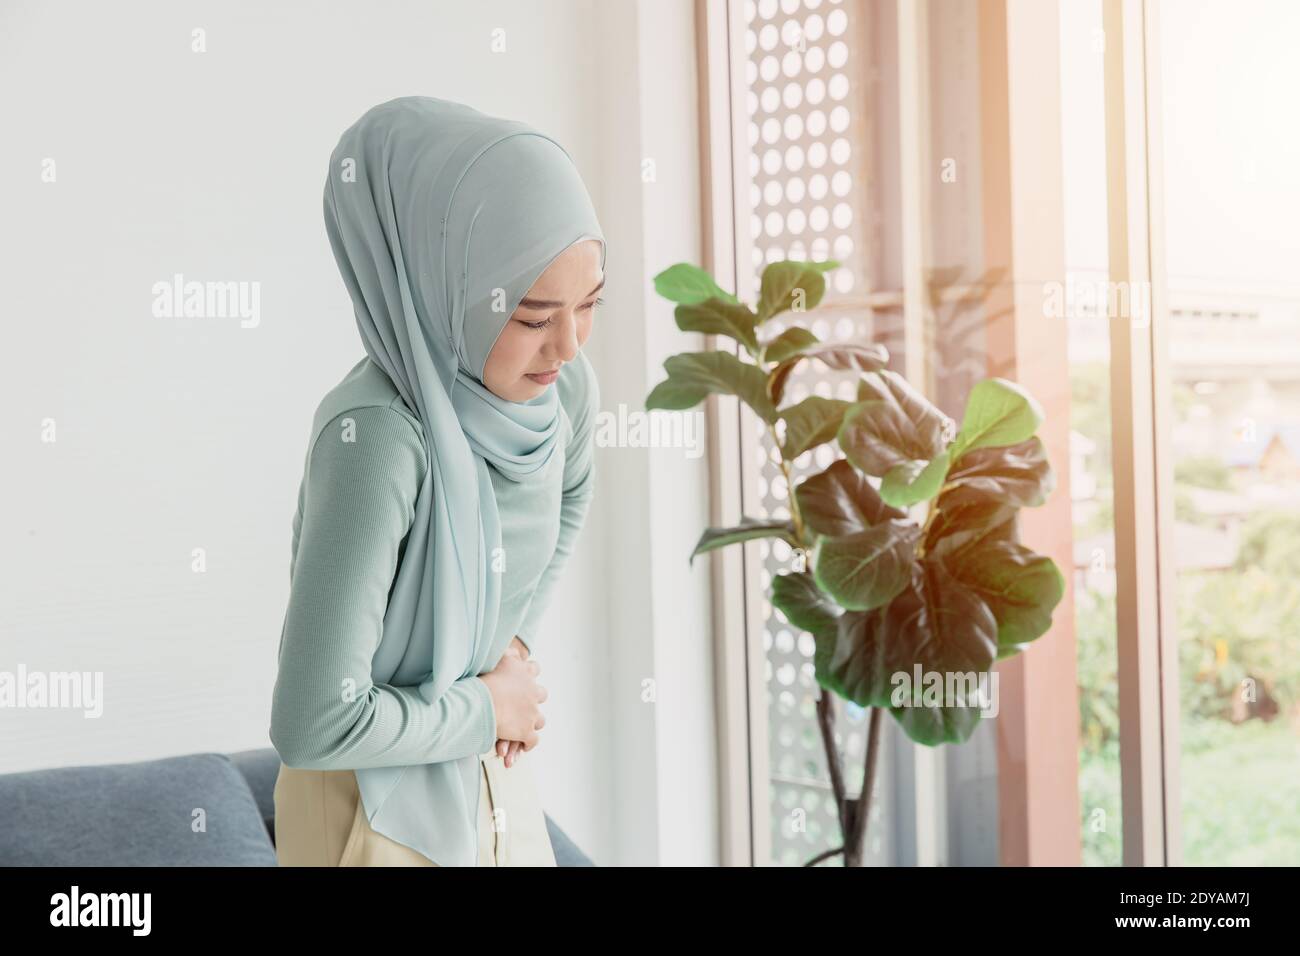 Arabischer Islam Frauen Bauchschmerzen ernste Krämpfe, Bauchschmerzen von Menstruation oder Periode Gesundheit Problem Ausdruck. Stockfoto